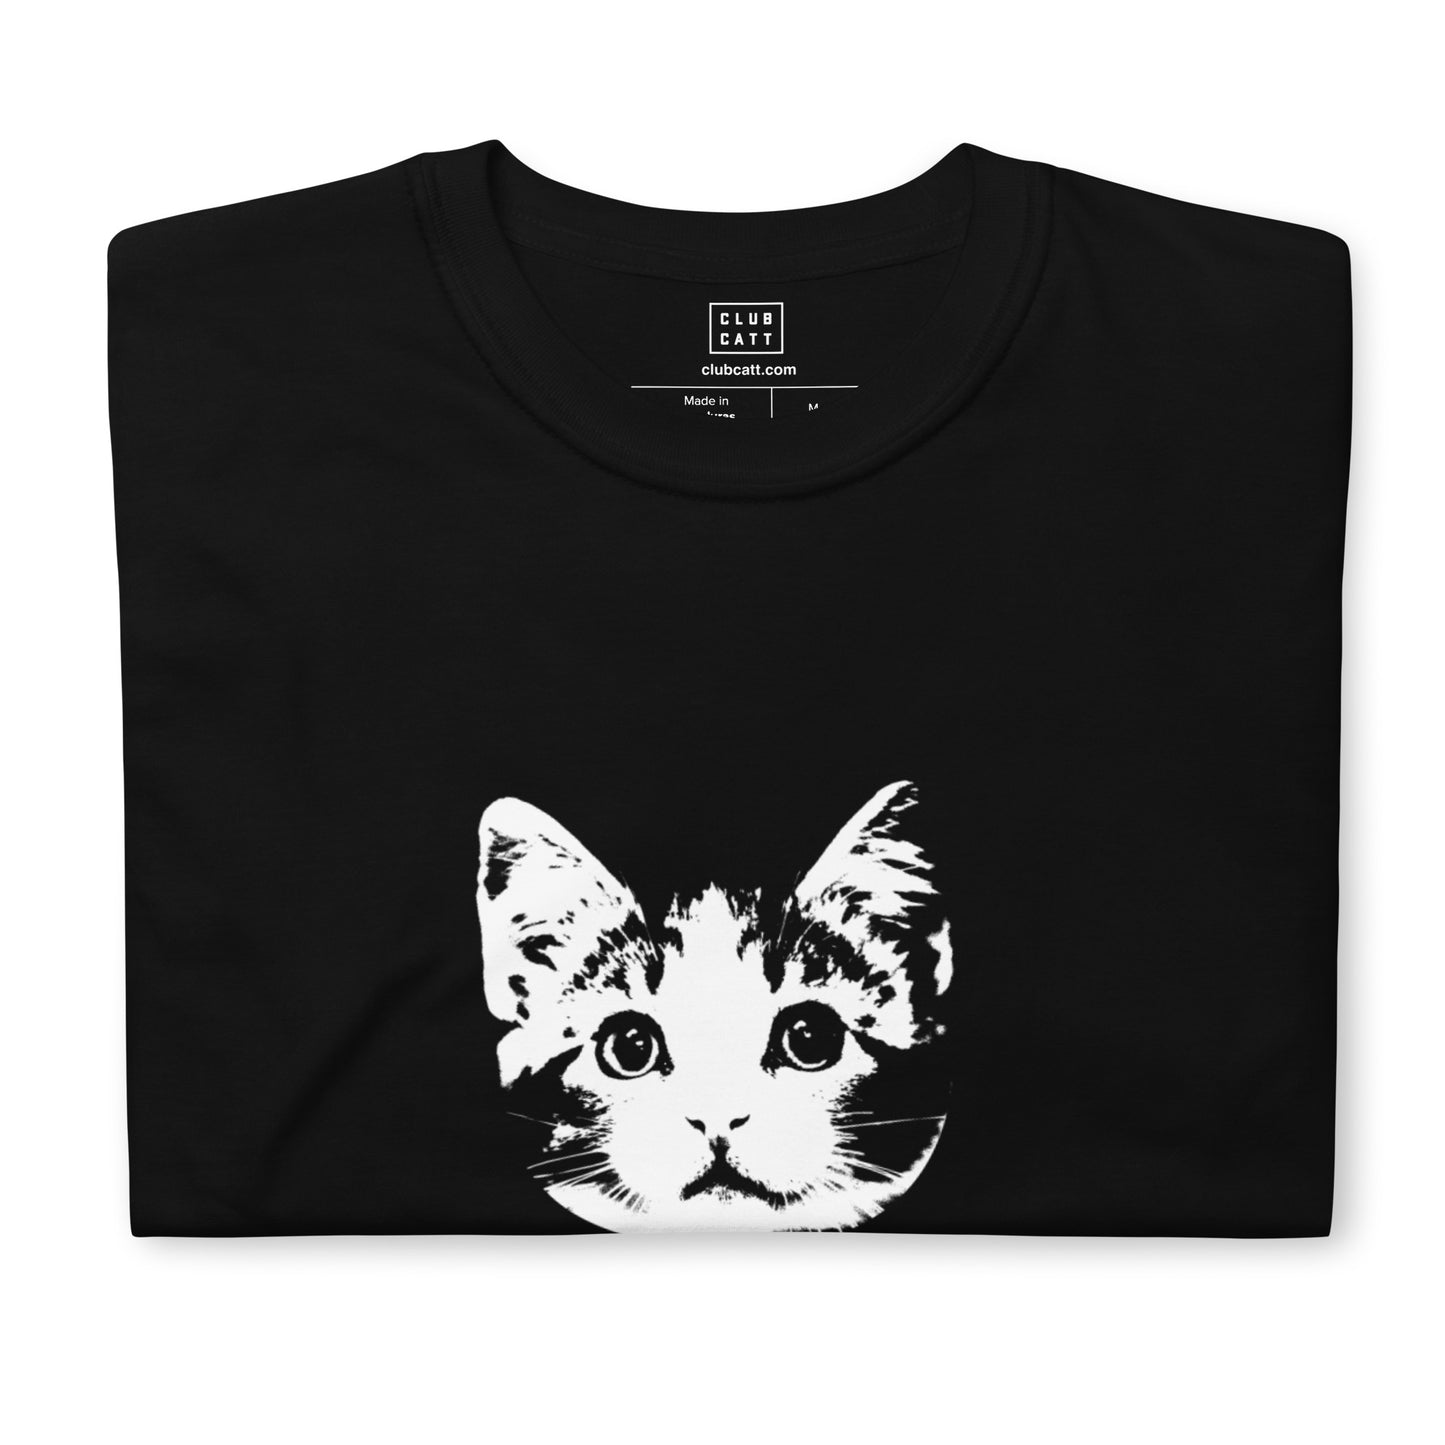 LUCKY Cat on T-Shirt